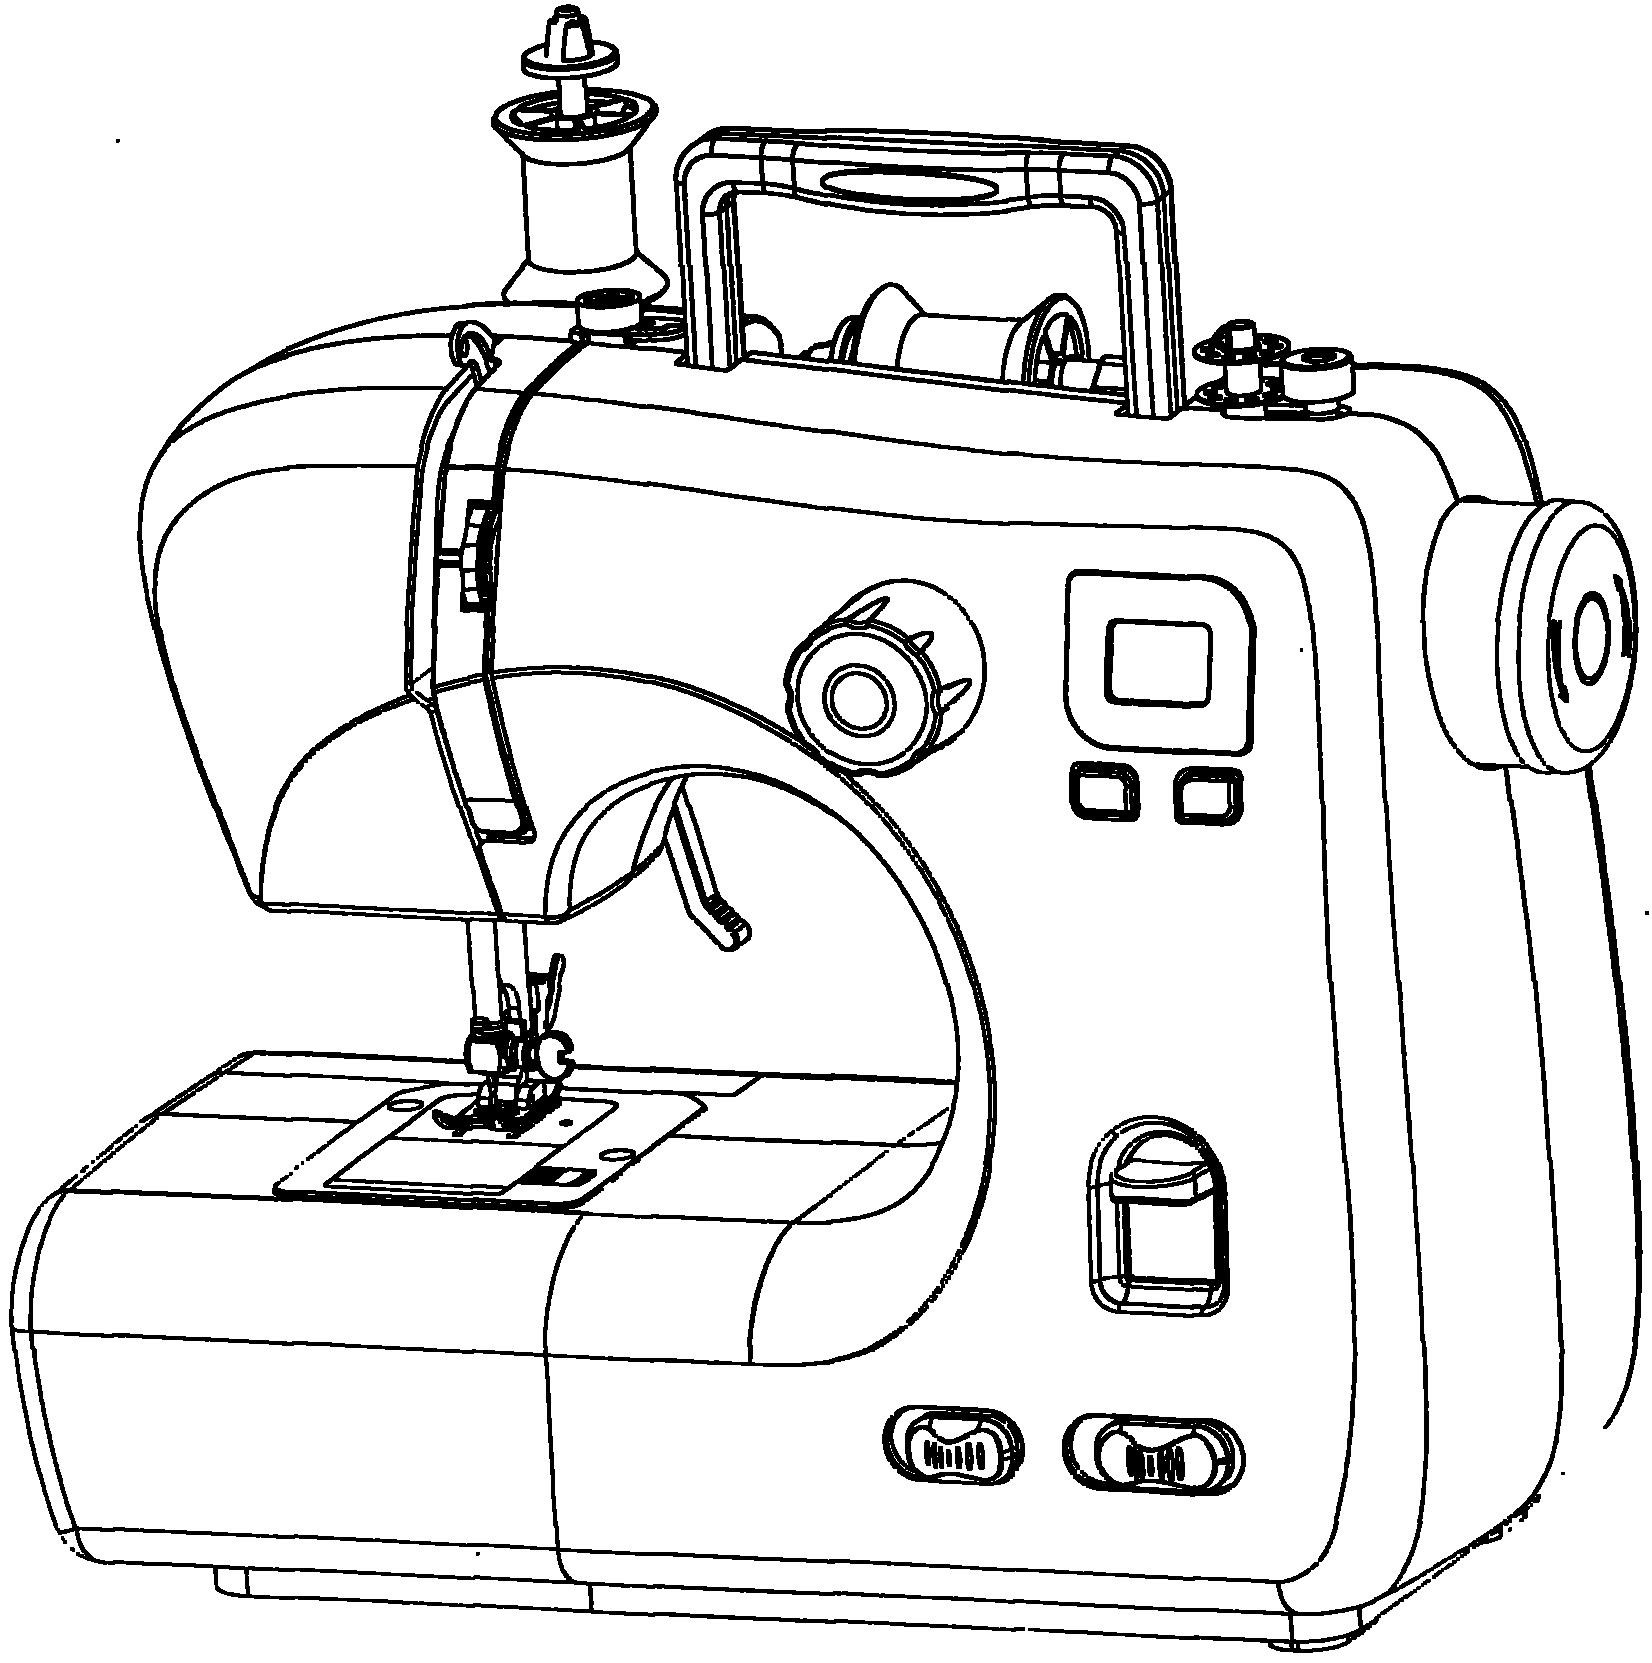 缝纫机怎么画最简单的图片